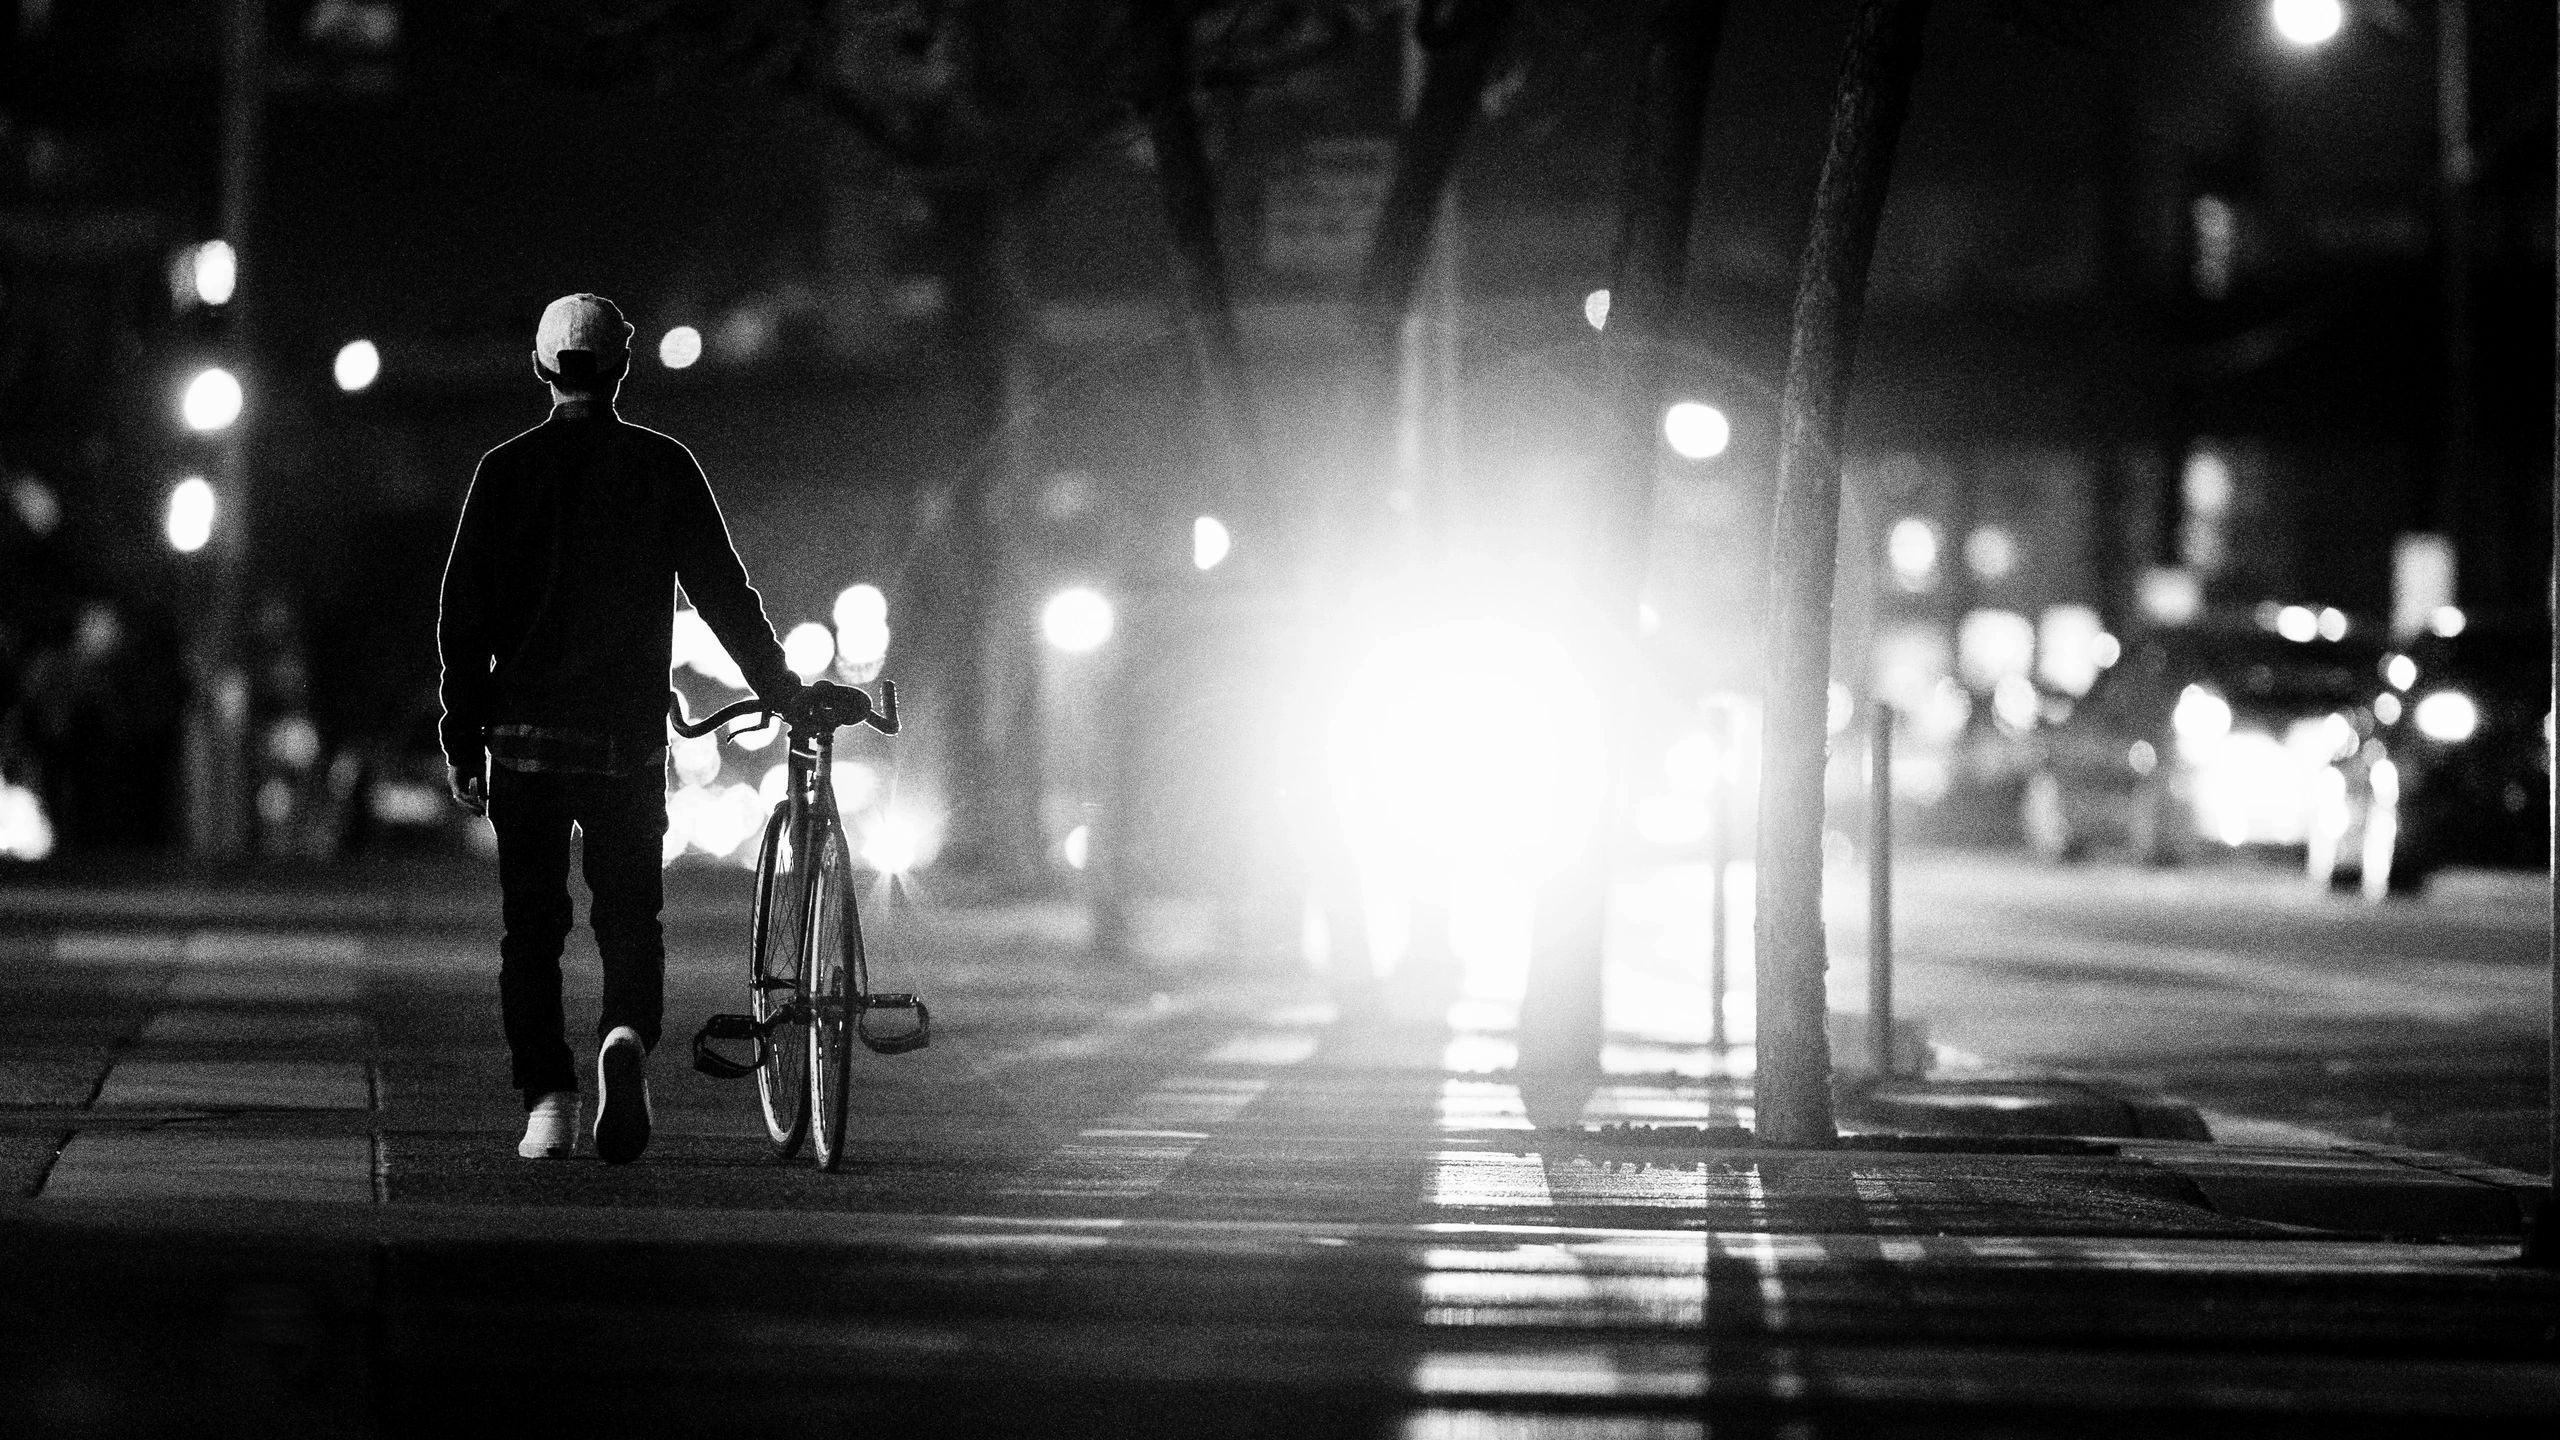 Man walking with bike